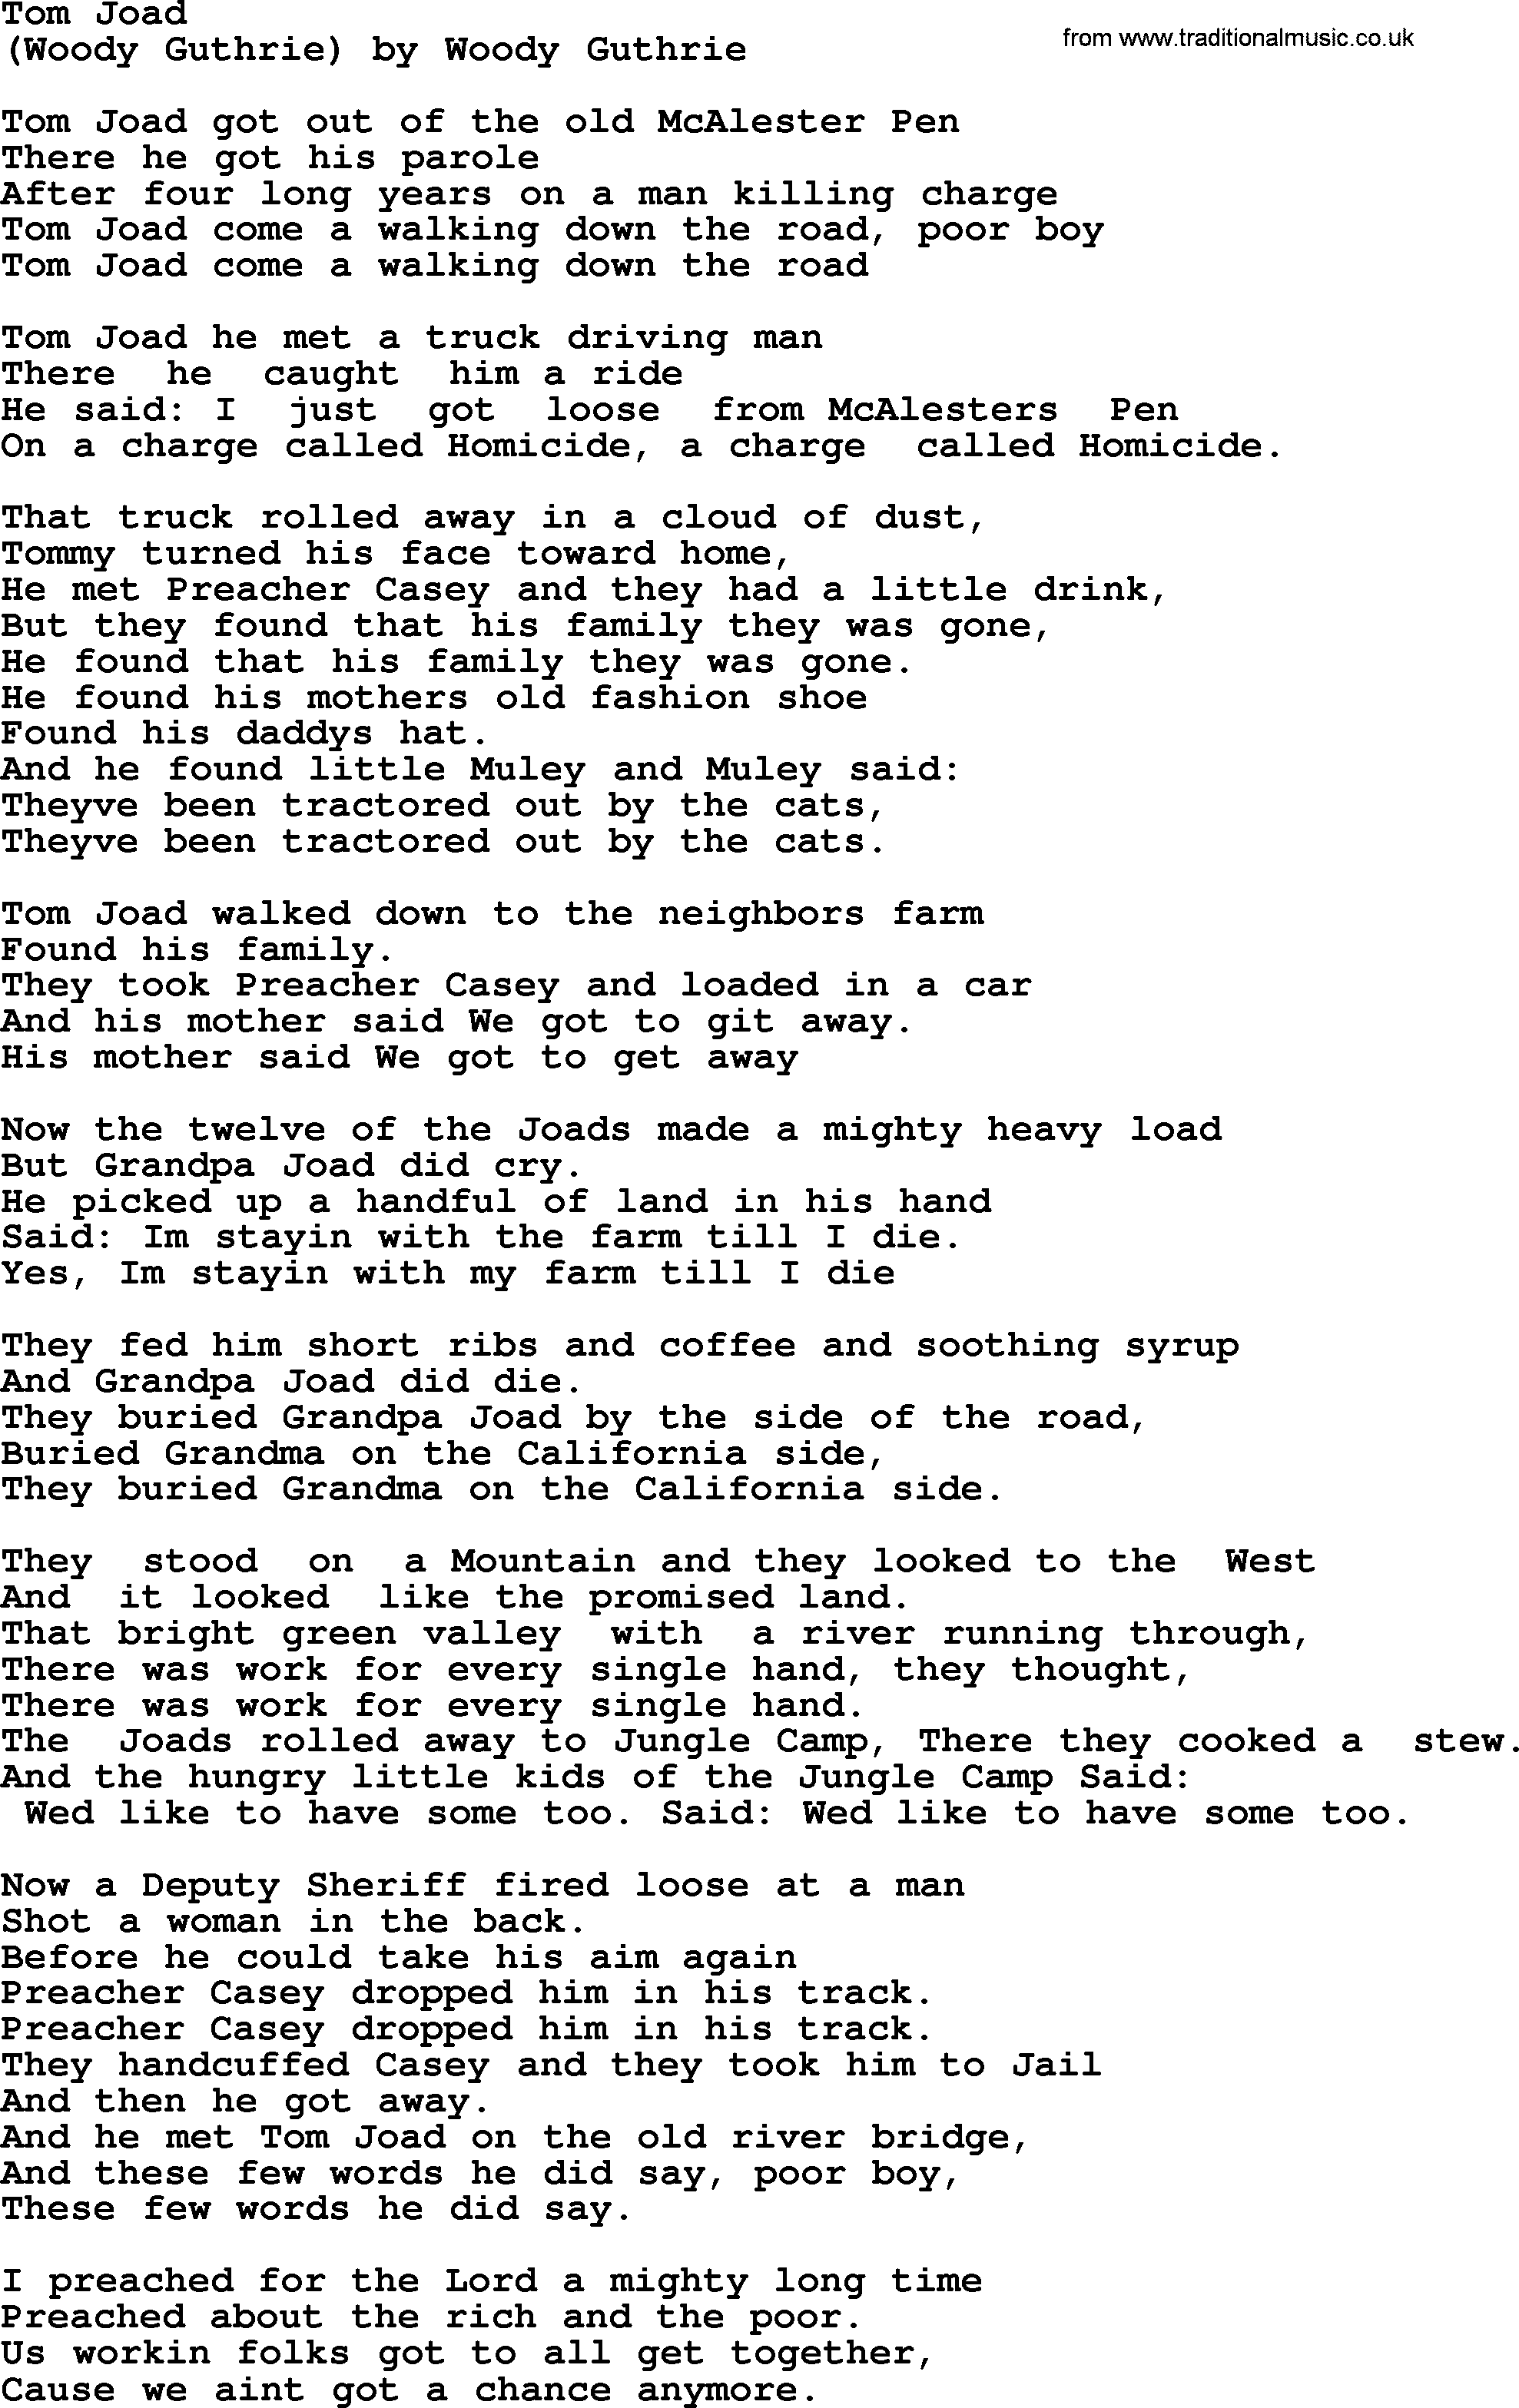 Bruce Springsteen song: Tom Joad lyrics